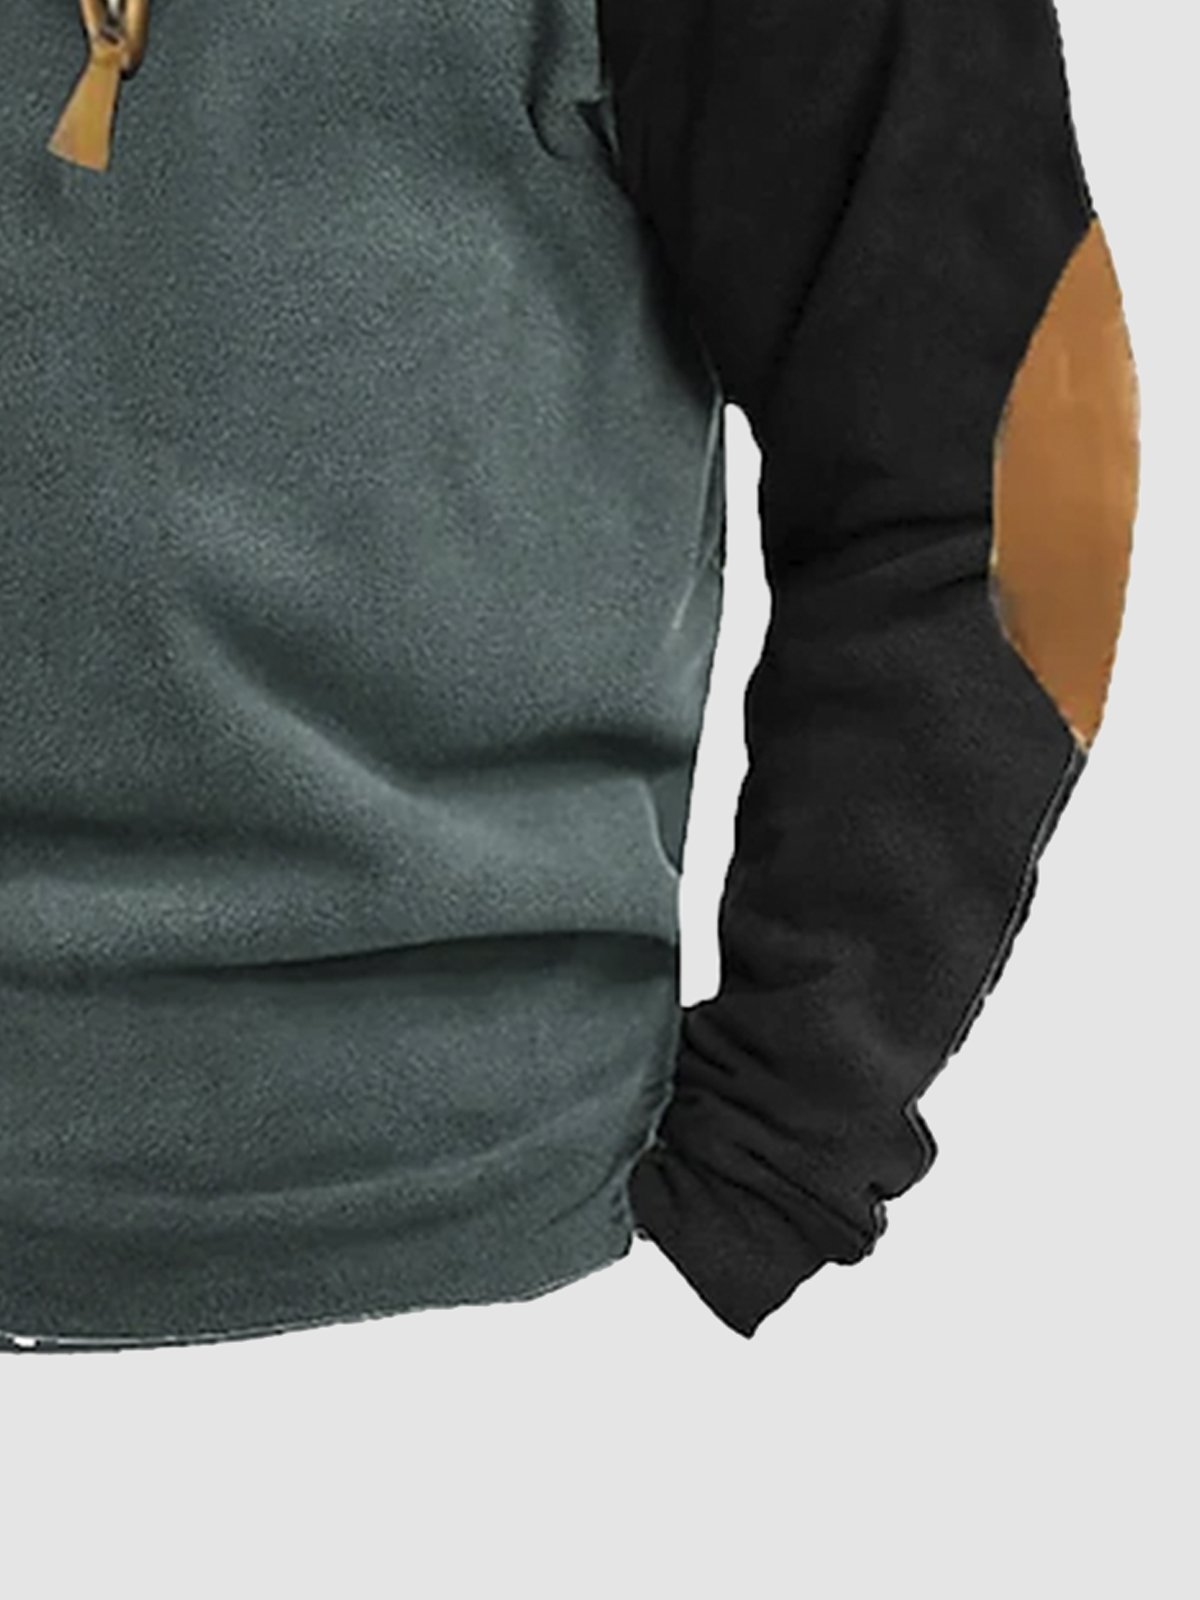 Royaura Men's Fleece Stand Collar Outdoor Warm Oversized Sweatshirt for Camping